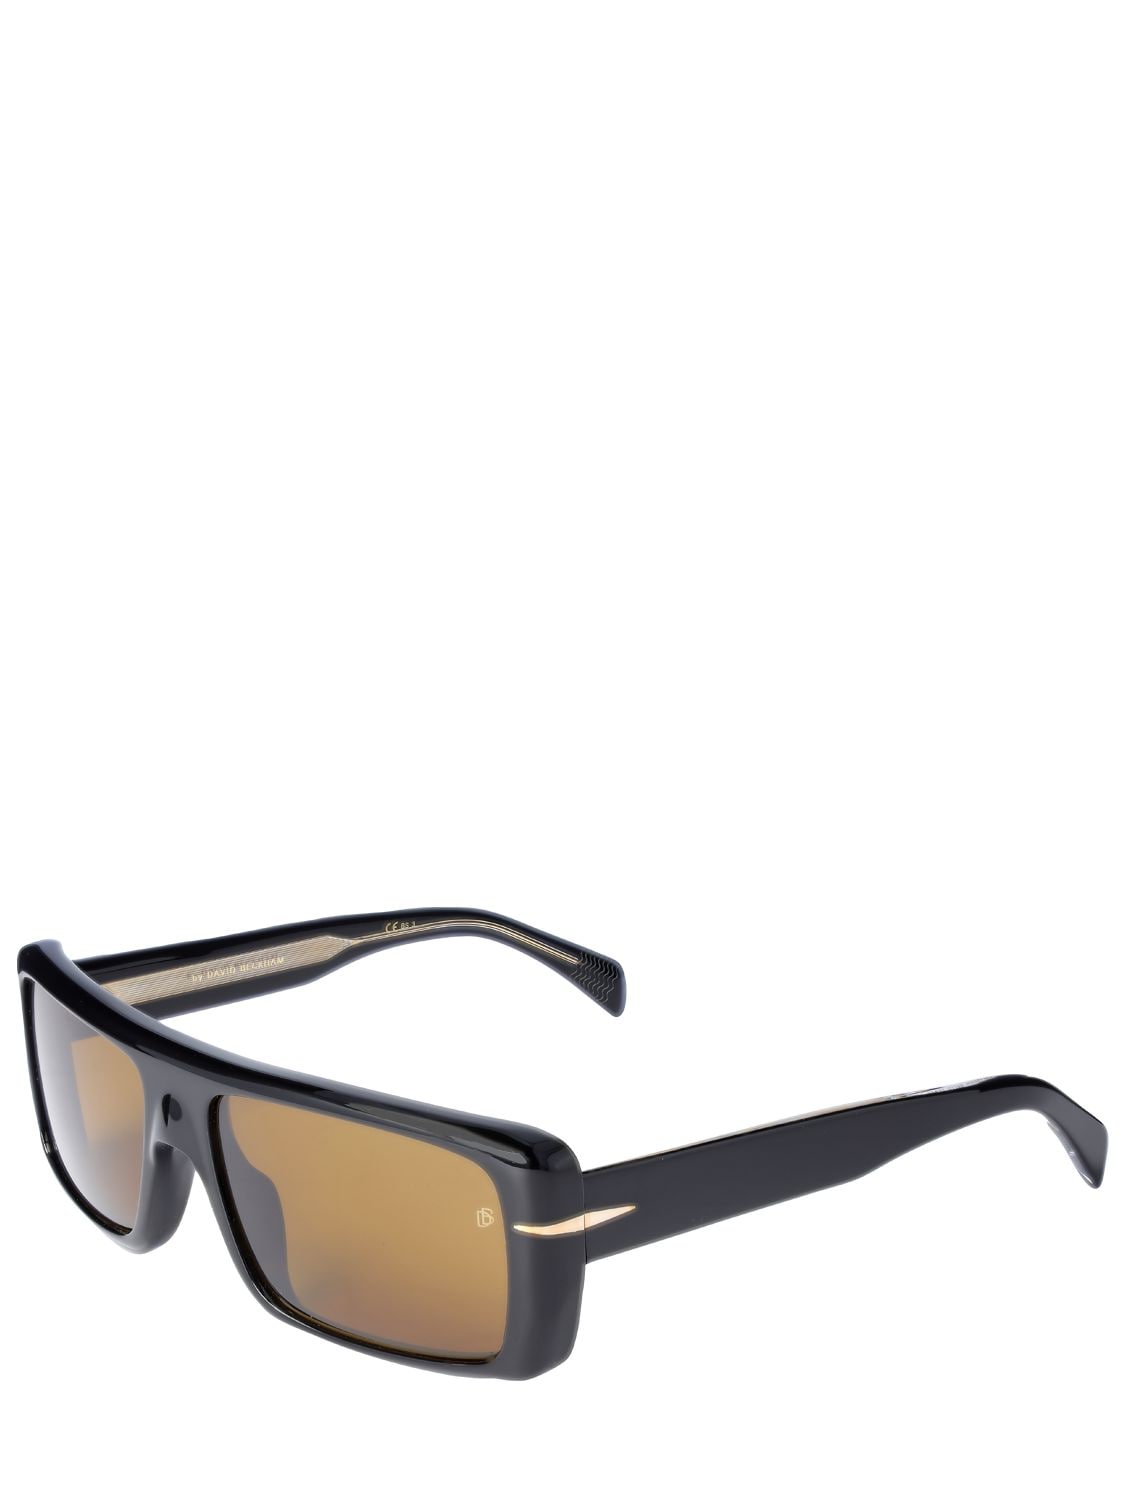 Shop Db Eyewear By David Beckham Db Squared Acetate Sunglasses In Black,brown